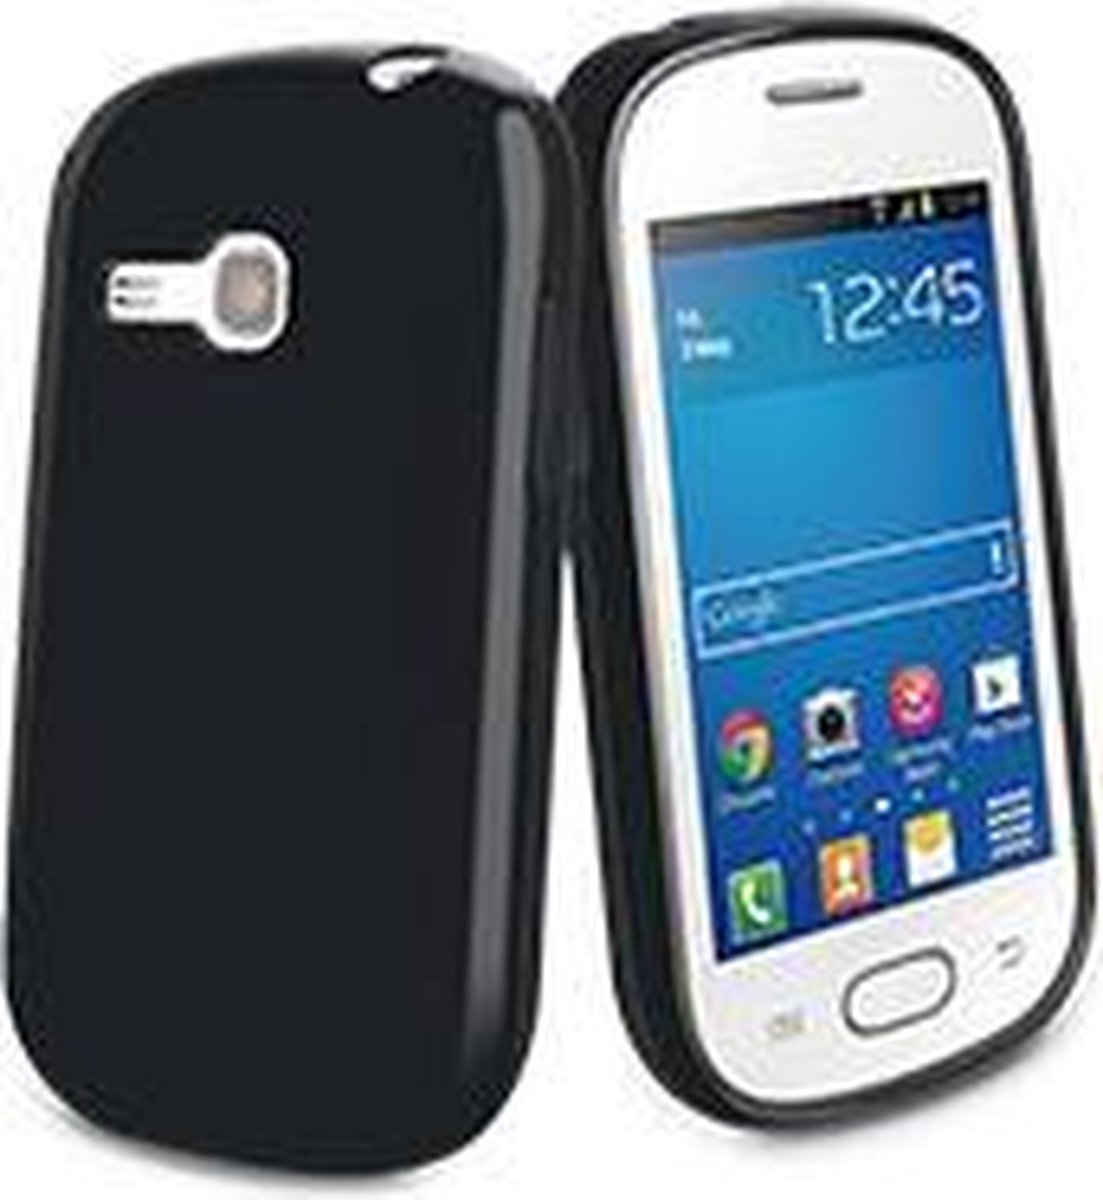 muvit Samsung Galaxy Fame Lite S6790 Minigel Case Black